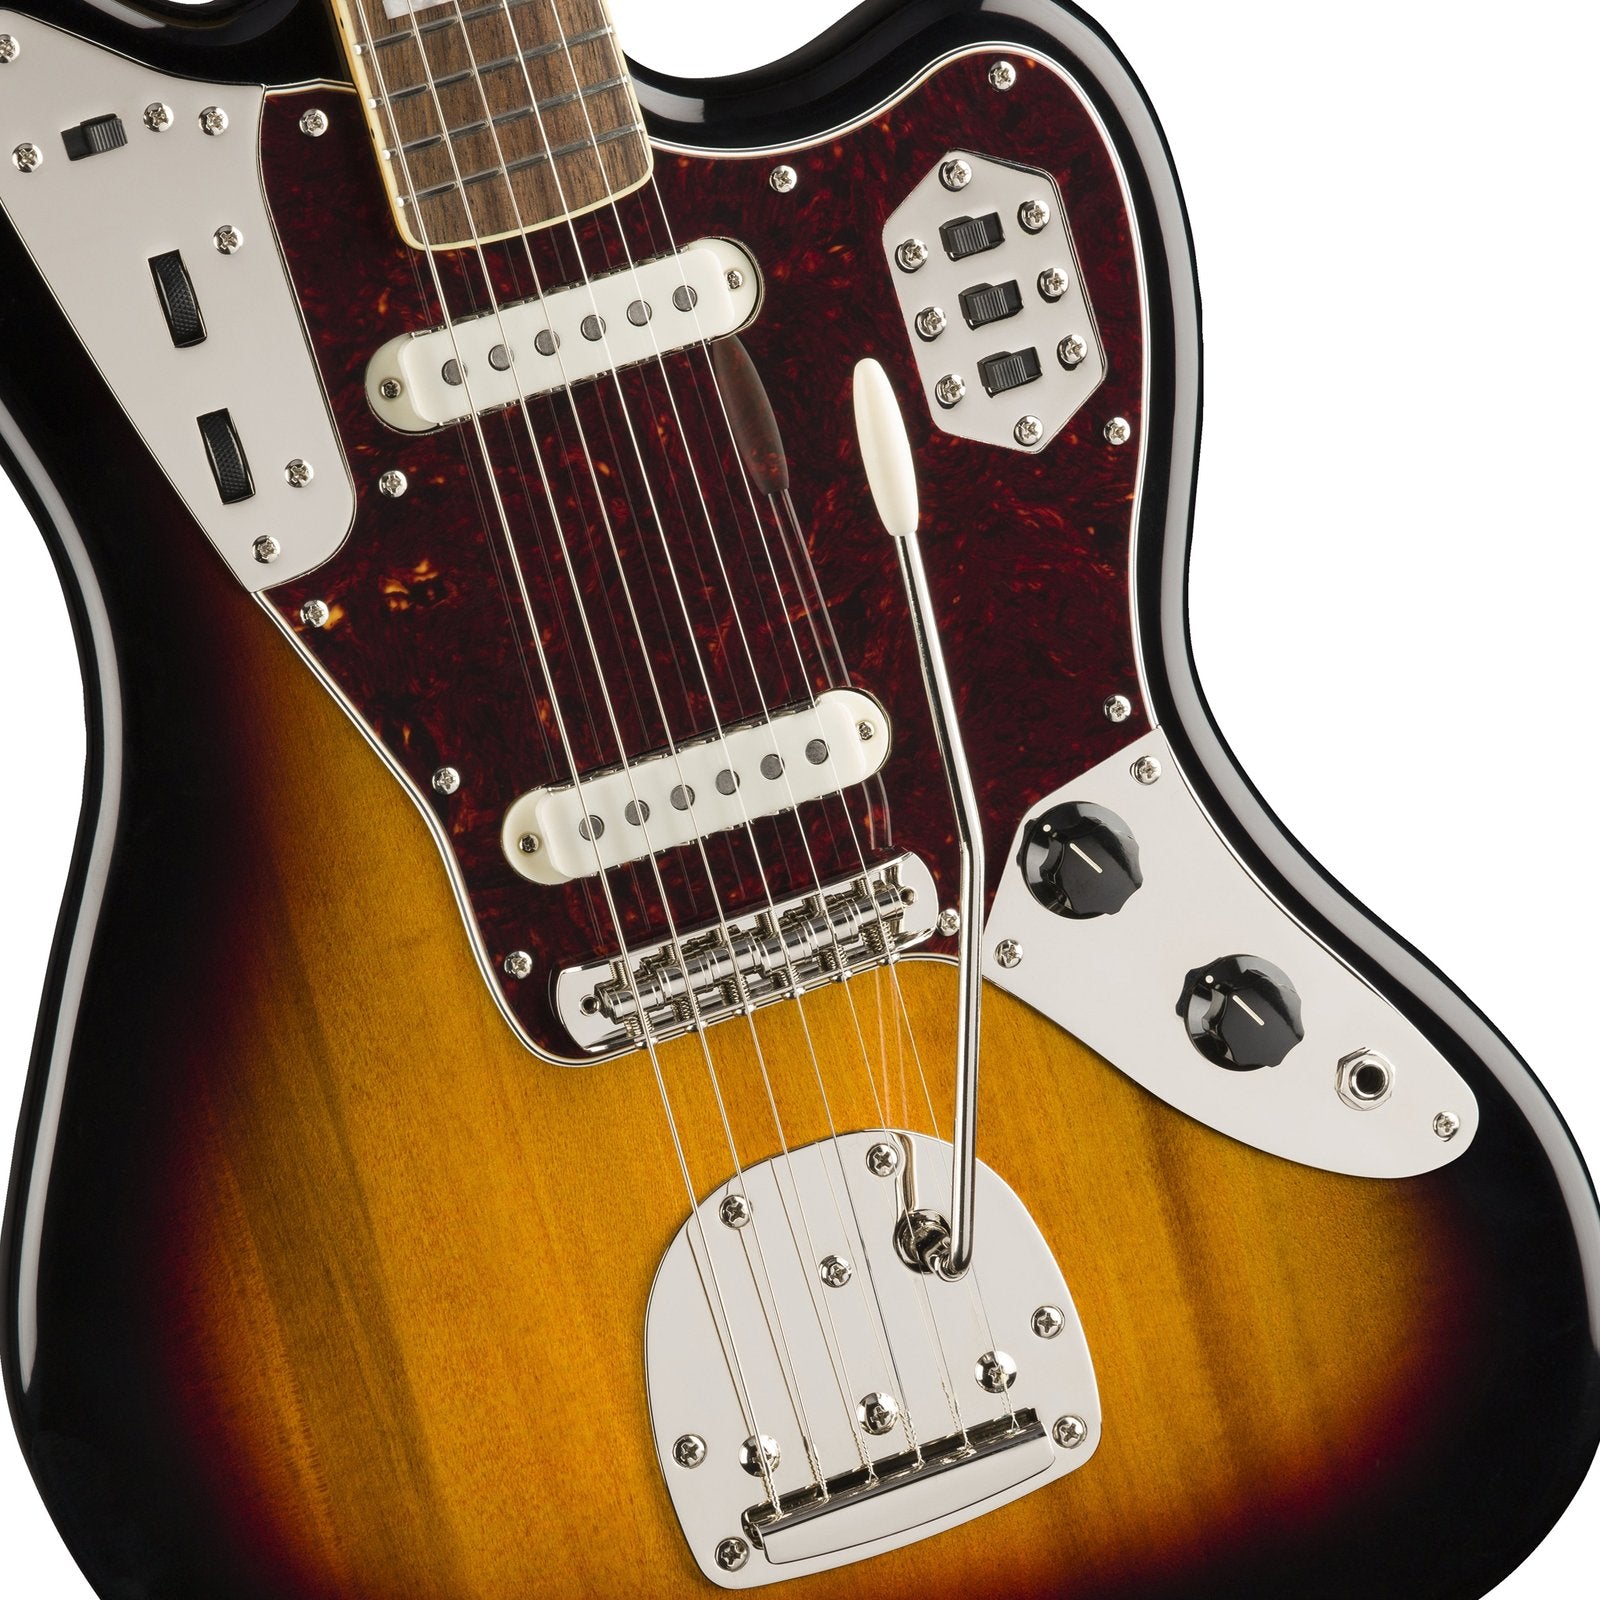 Squier Classic Vibe 70s Jaguar Electric Guitar, Laurel FB, 3-Tone Sunburst, SQUIER BY FENDER, BASS GUITAR, squier-by-fender-bass-guitar-037-4560-500, ZOSO MUSIC SDN BHD